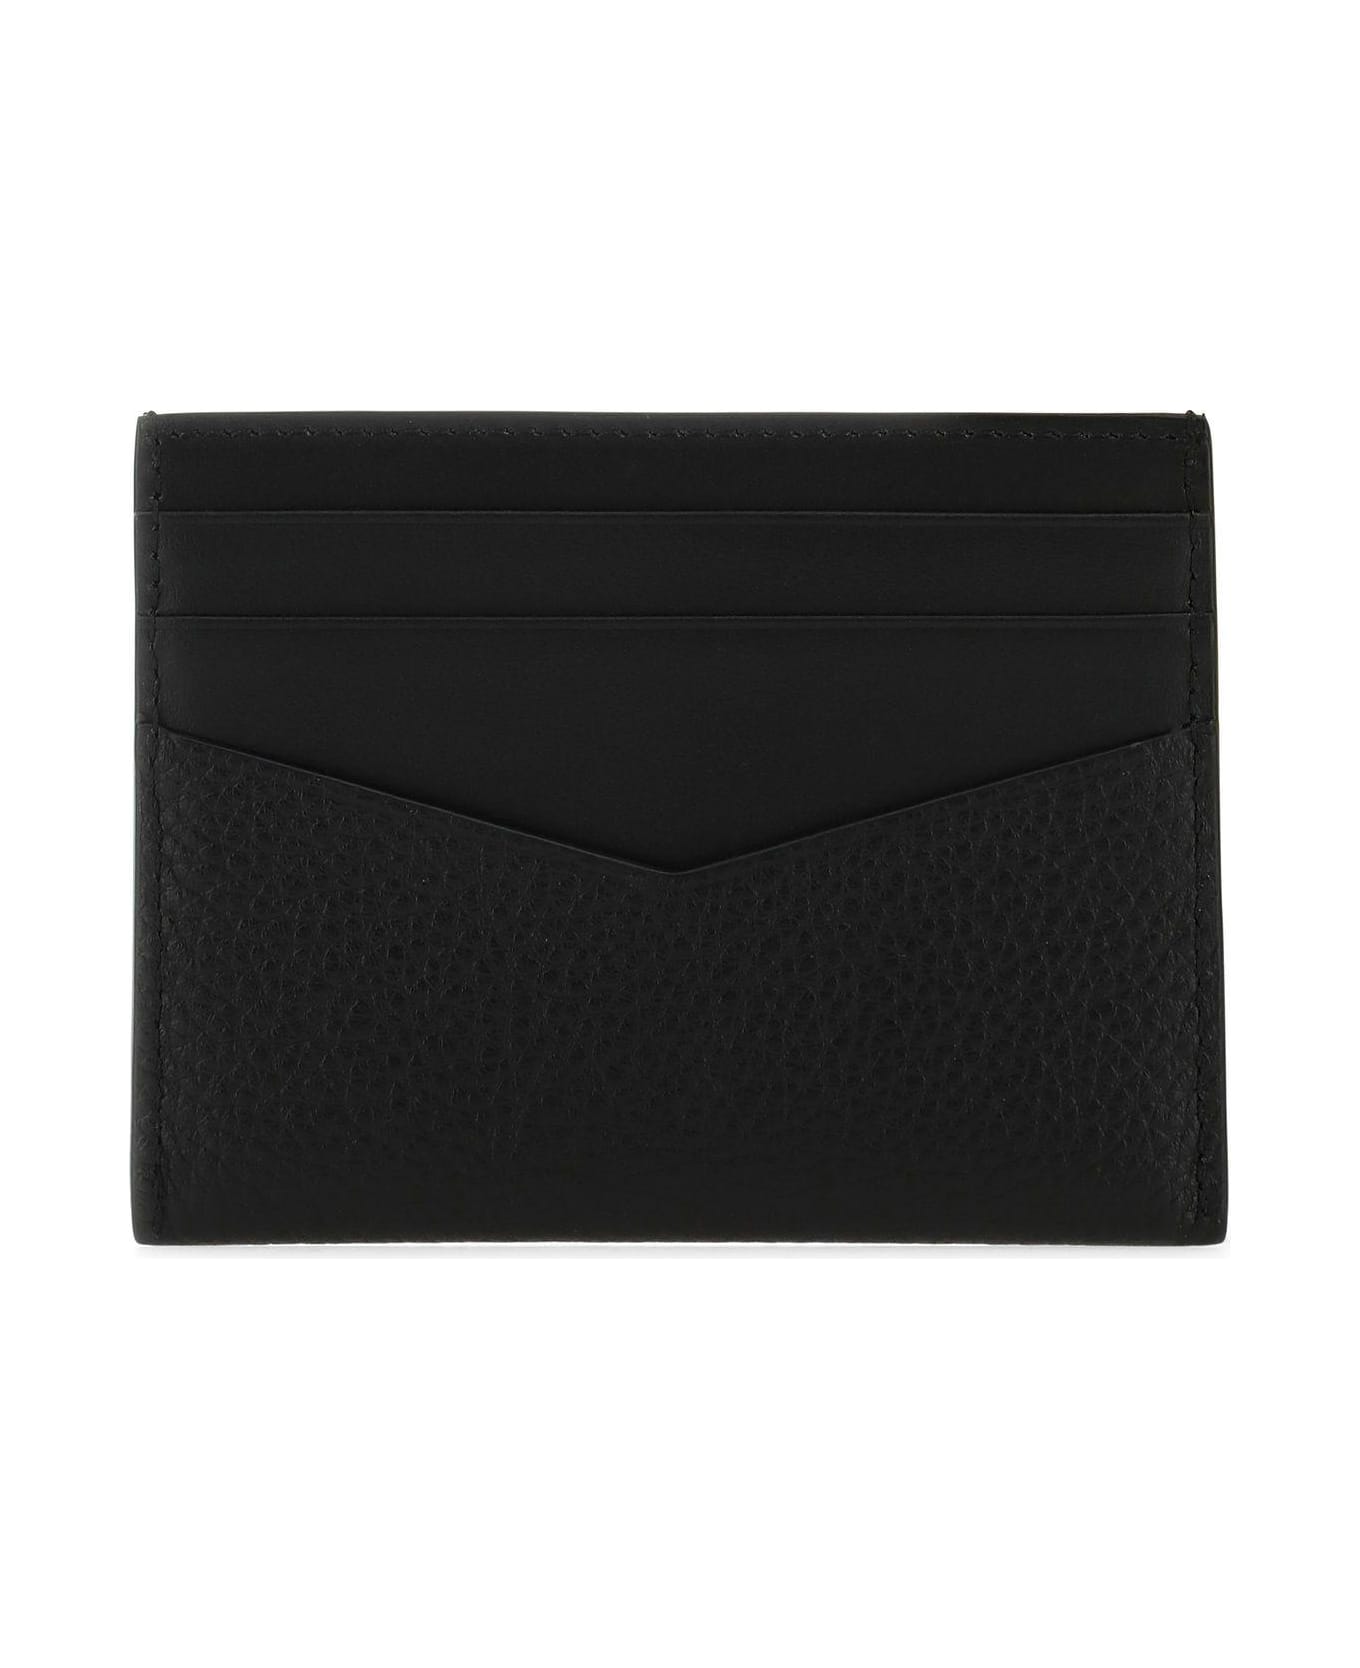 Givenchy Black Leather Card Holder - Black